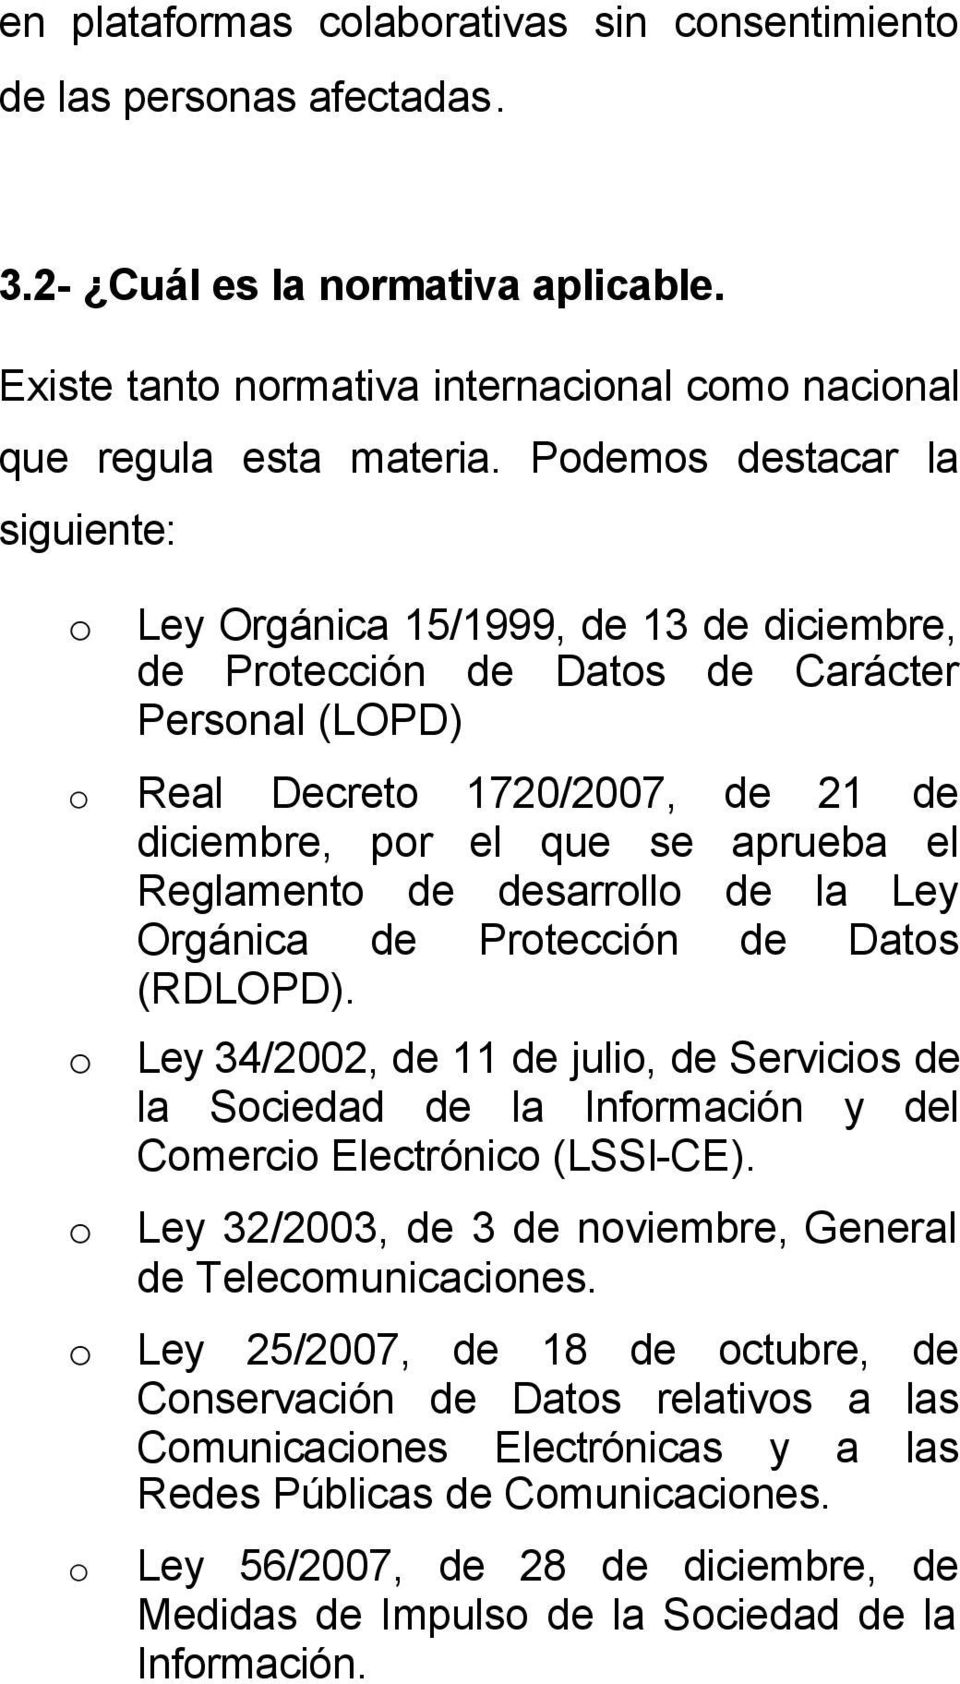 Reglamento de desarrollo de la Ley Orgánica de Protección de Datos (RDLOPD). o Ley 34/2002, de 11 de julio, de Servicios de la Sociedad de la Información y del Comercio Electrónico (LSSI-CE).